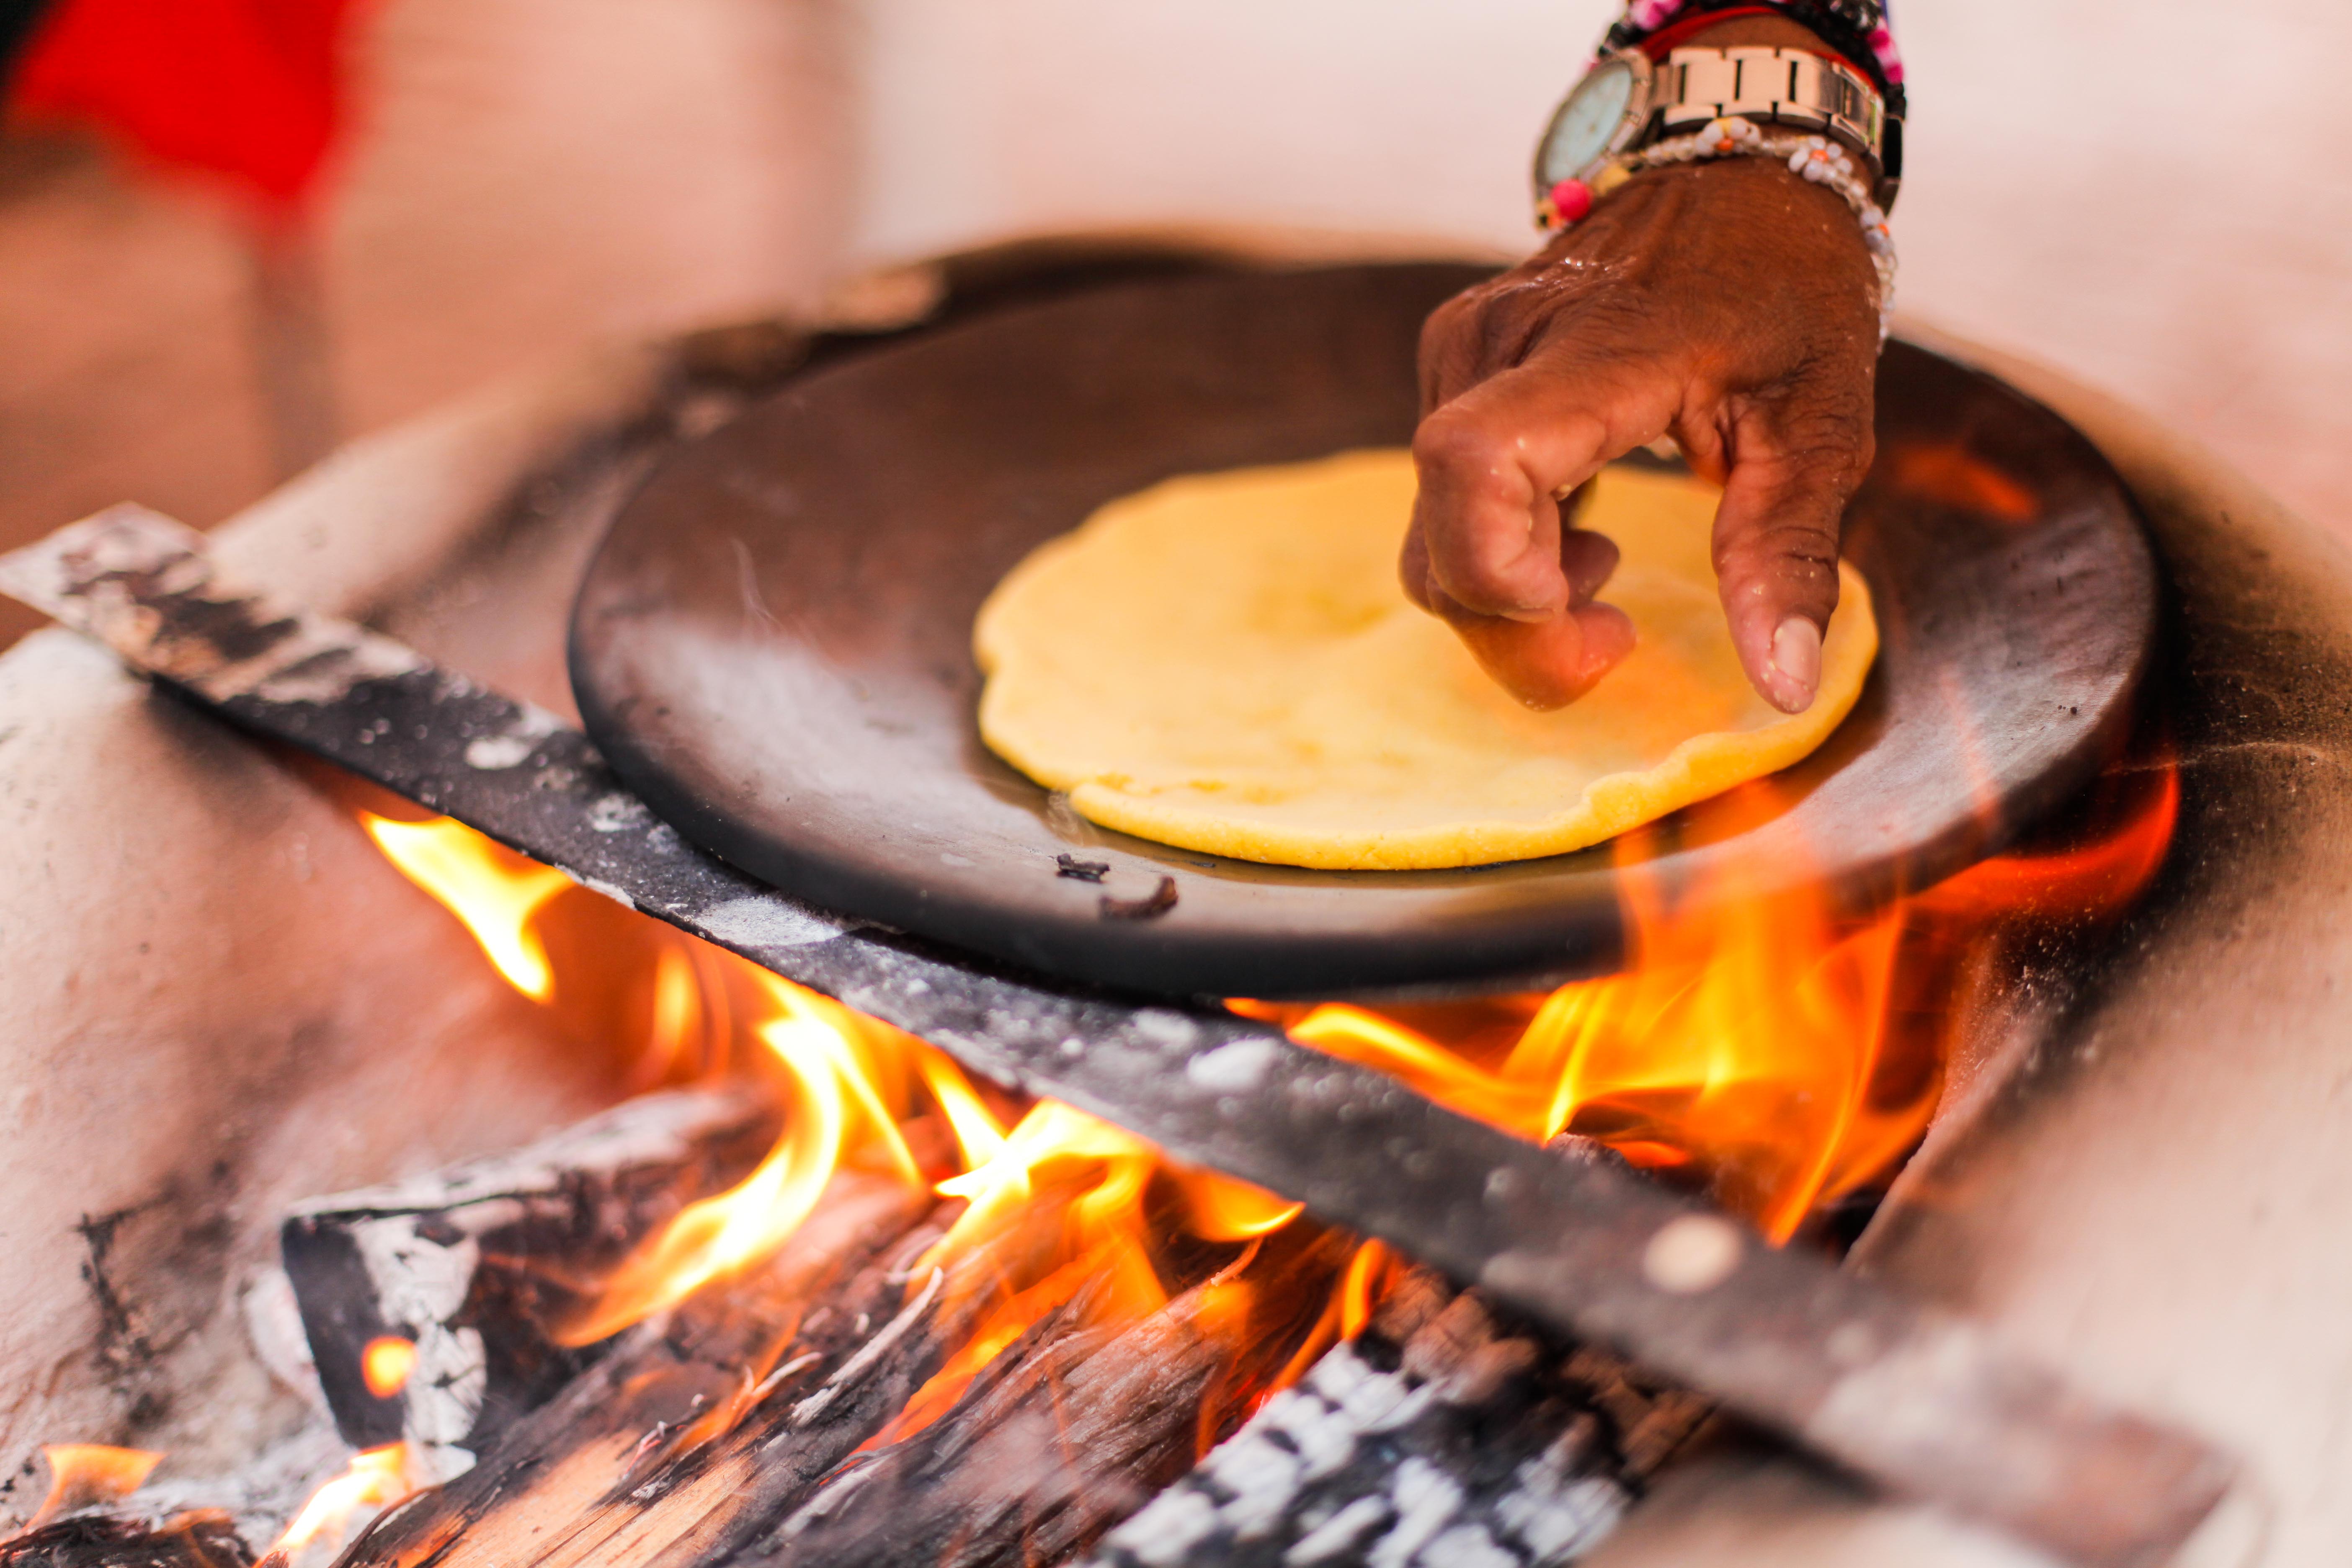 La cocina guanacasteca es una tradiciones más reconocidas en el país, cuyos estudios intentan poner en valor sus aportes culturales y nutricionales.  Foto UCR-UNA